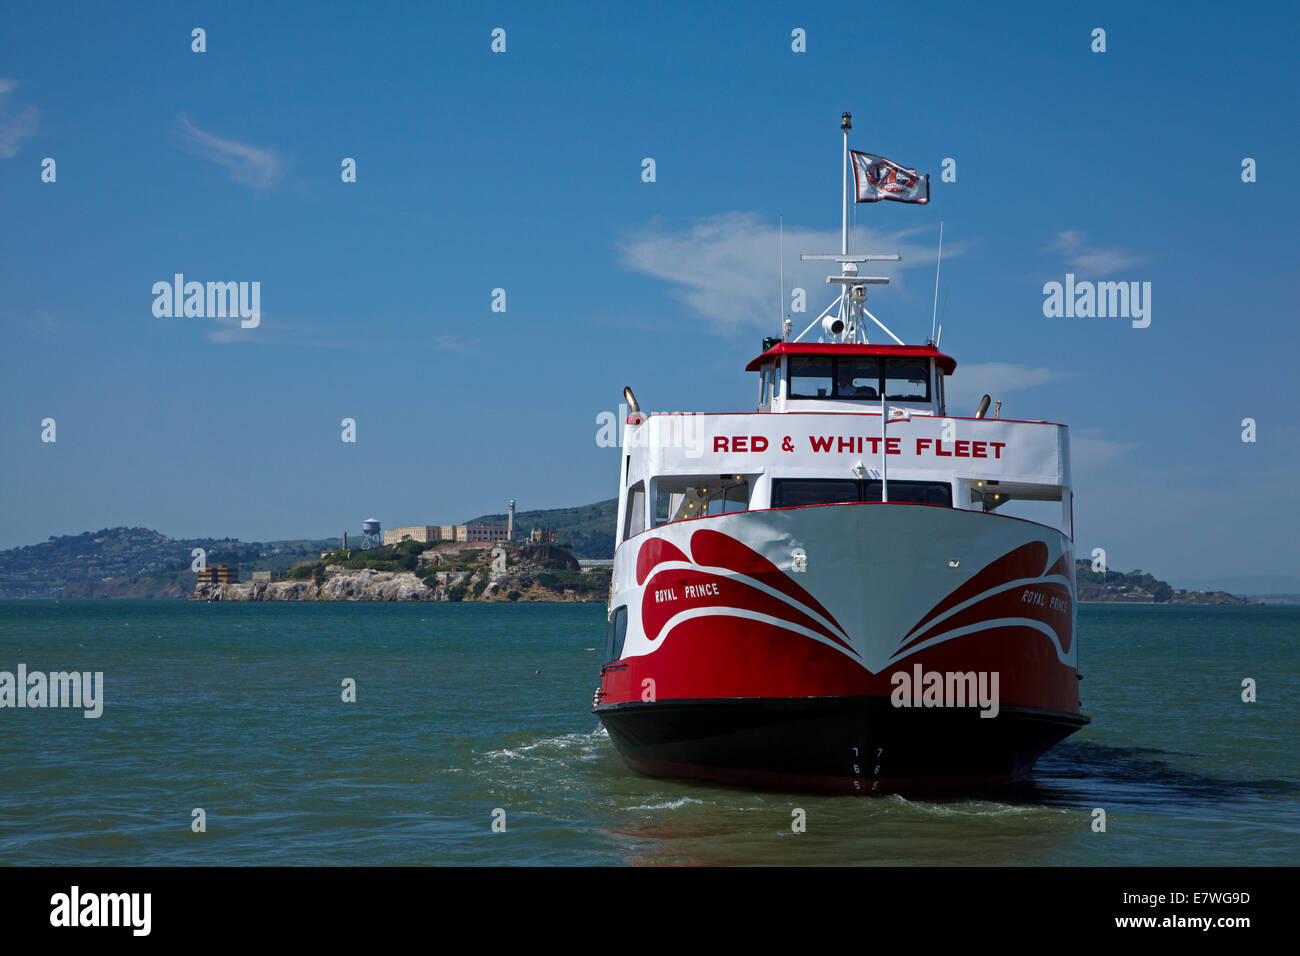 Royal Prince tour voile, Pier 43 1/2, Fisherman's Wharf, et l'île d'Alcatraz, San Francisco, California, USA Banque D'Images